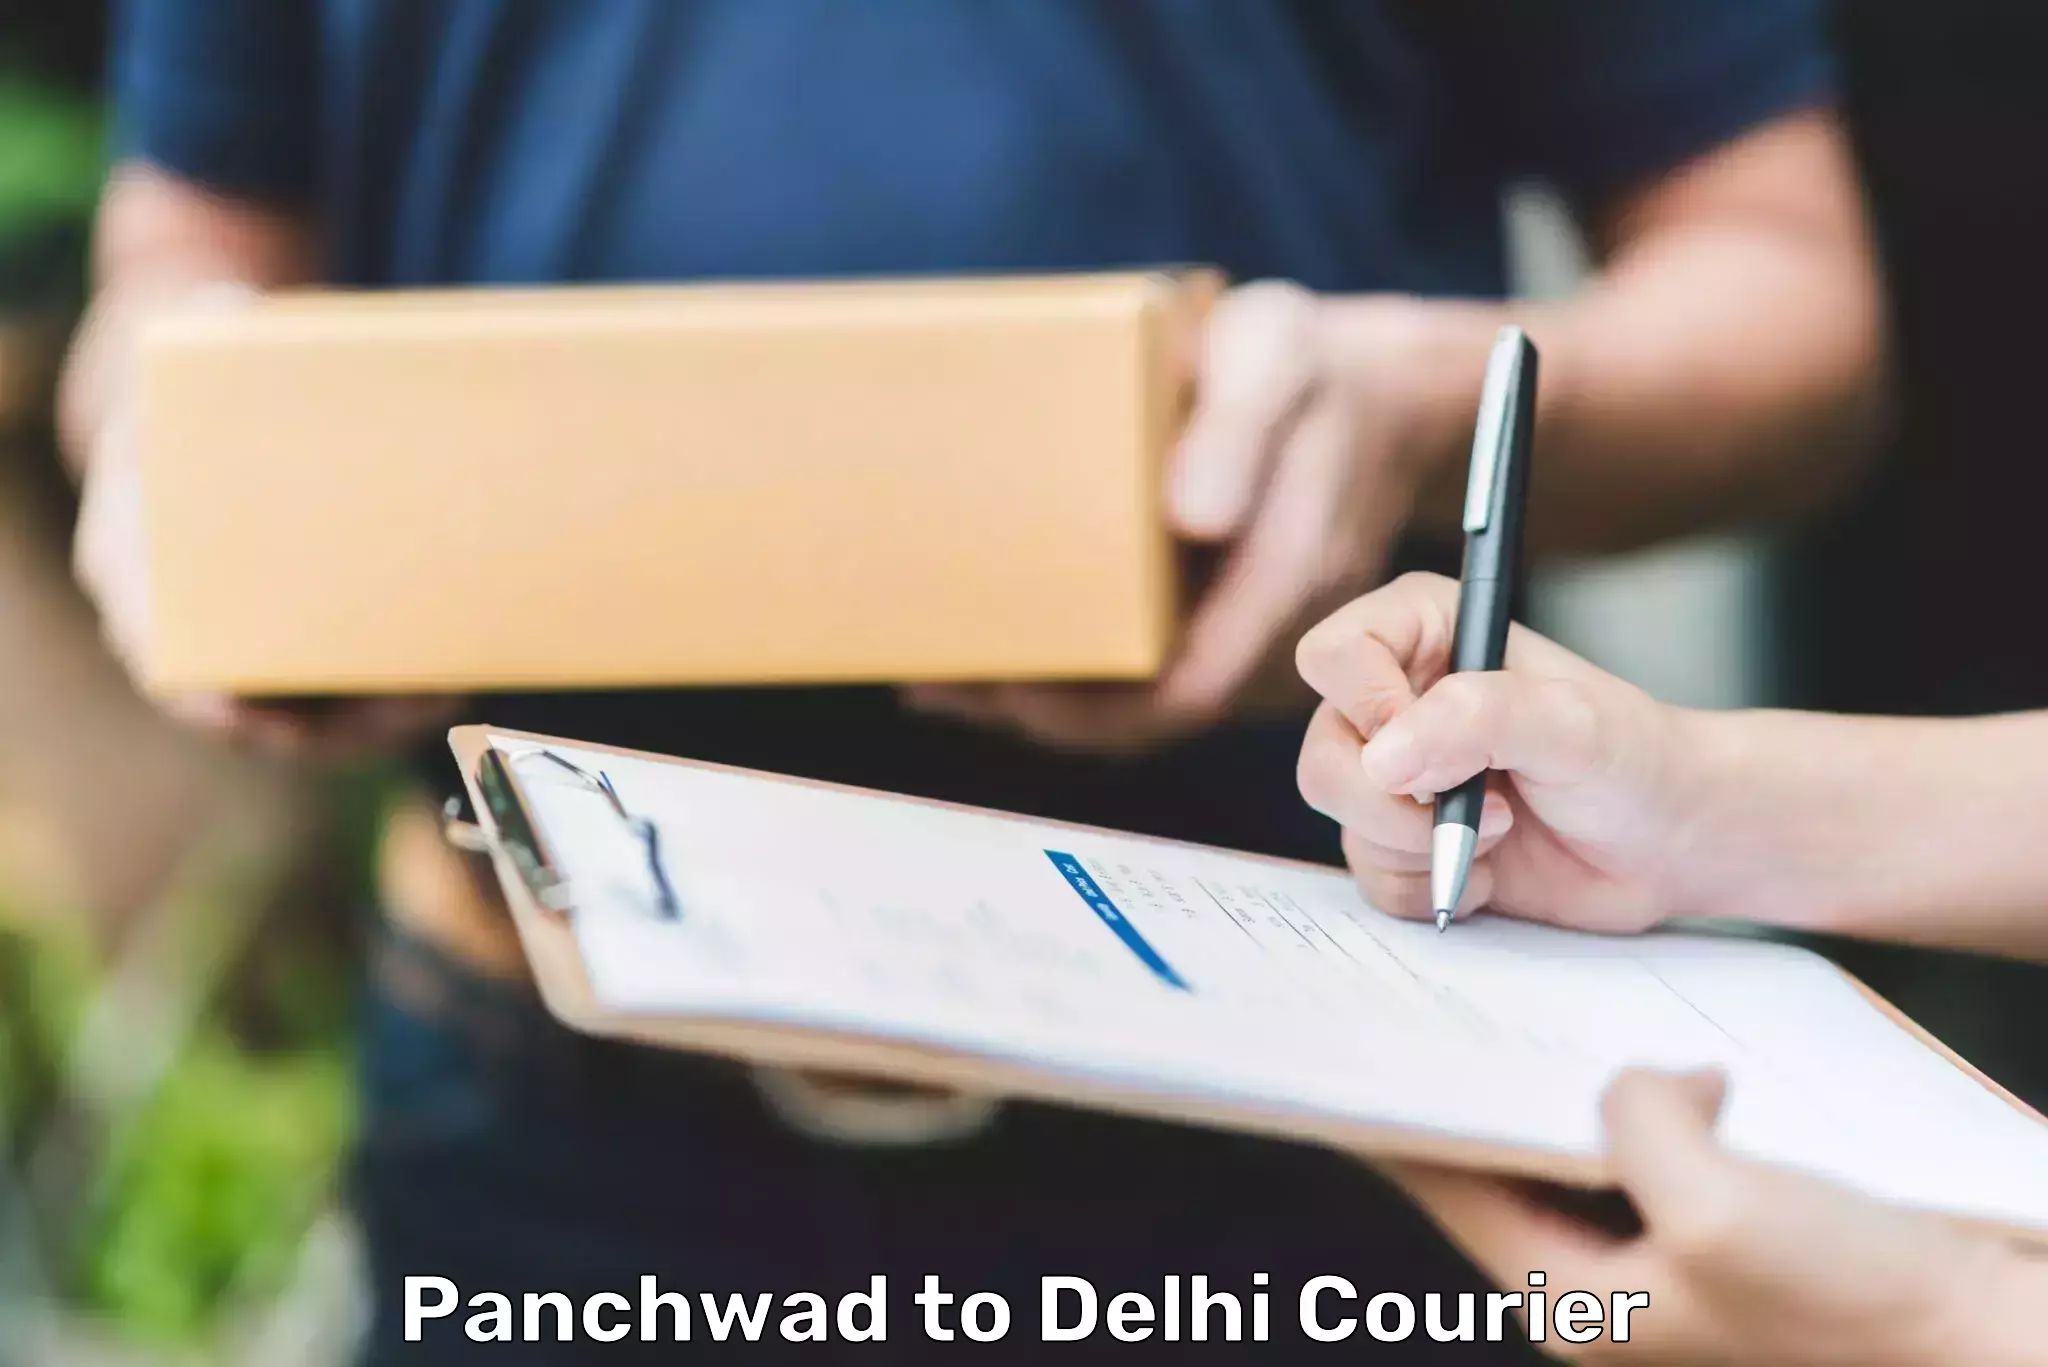 Speedy delivery service Panchwad to Delhi